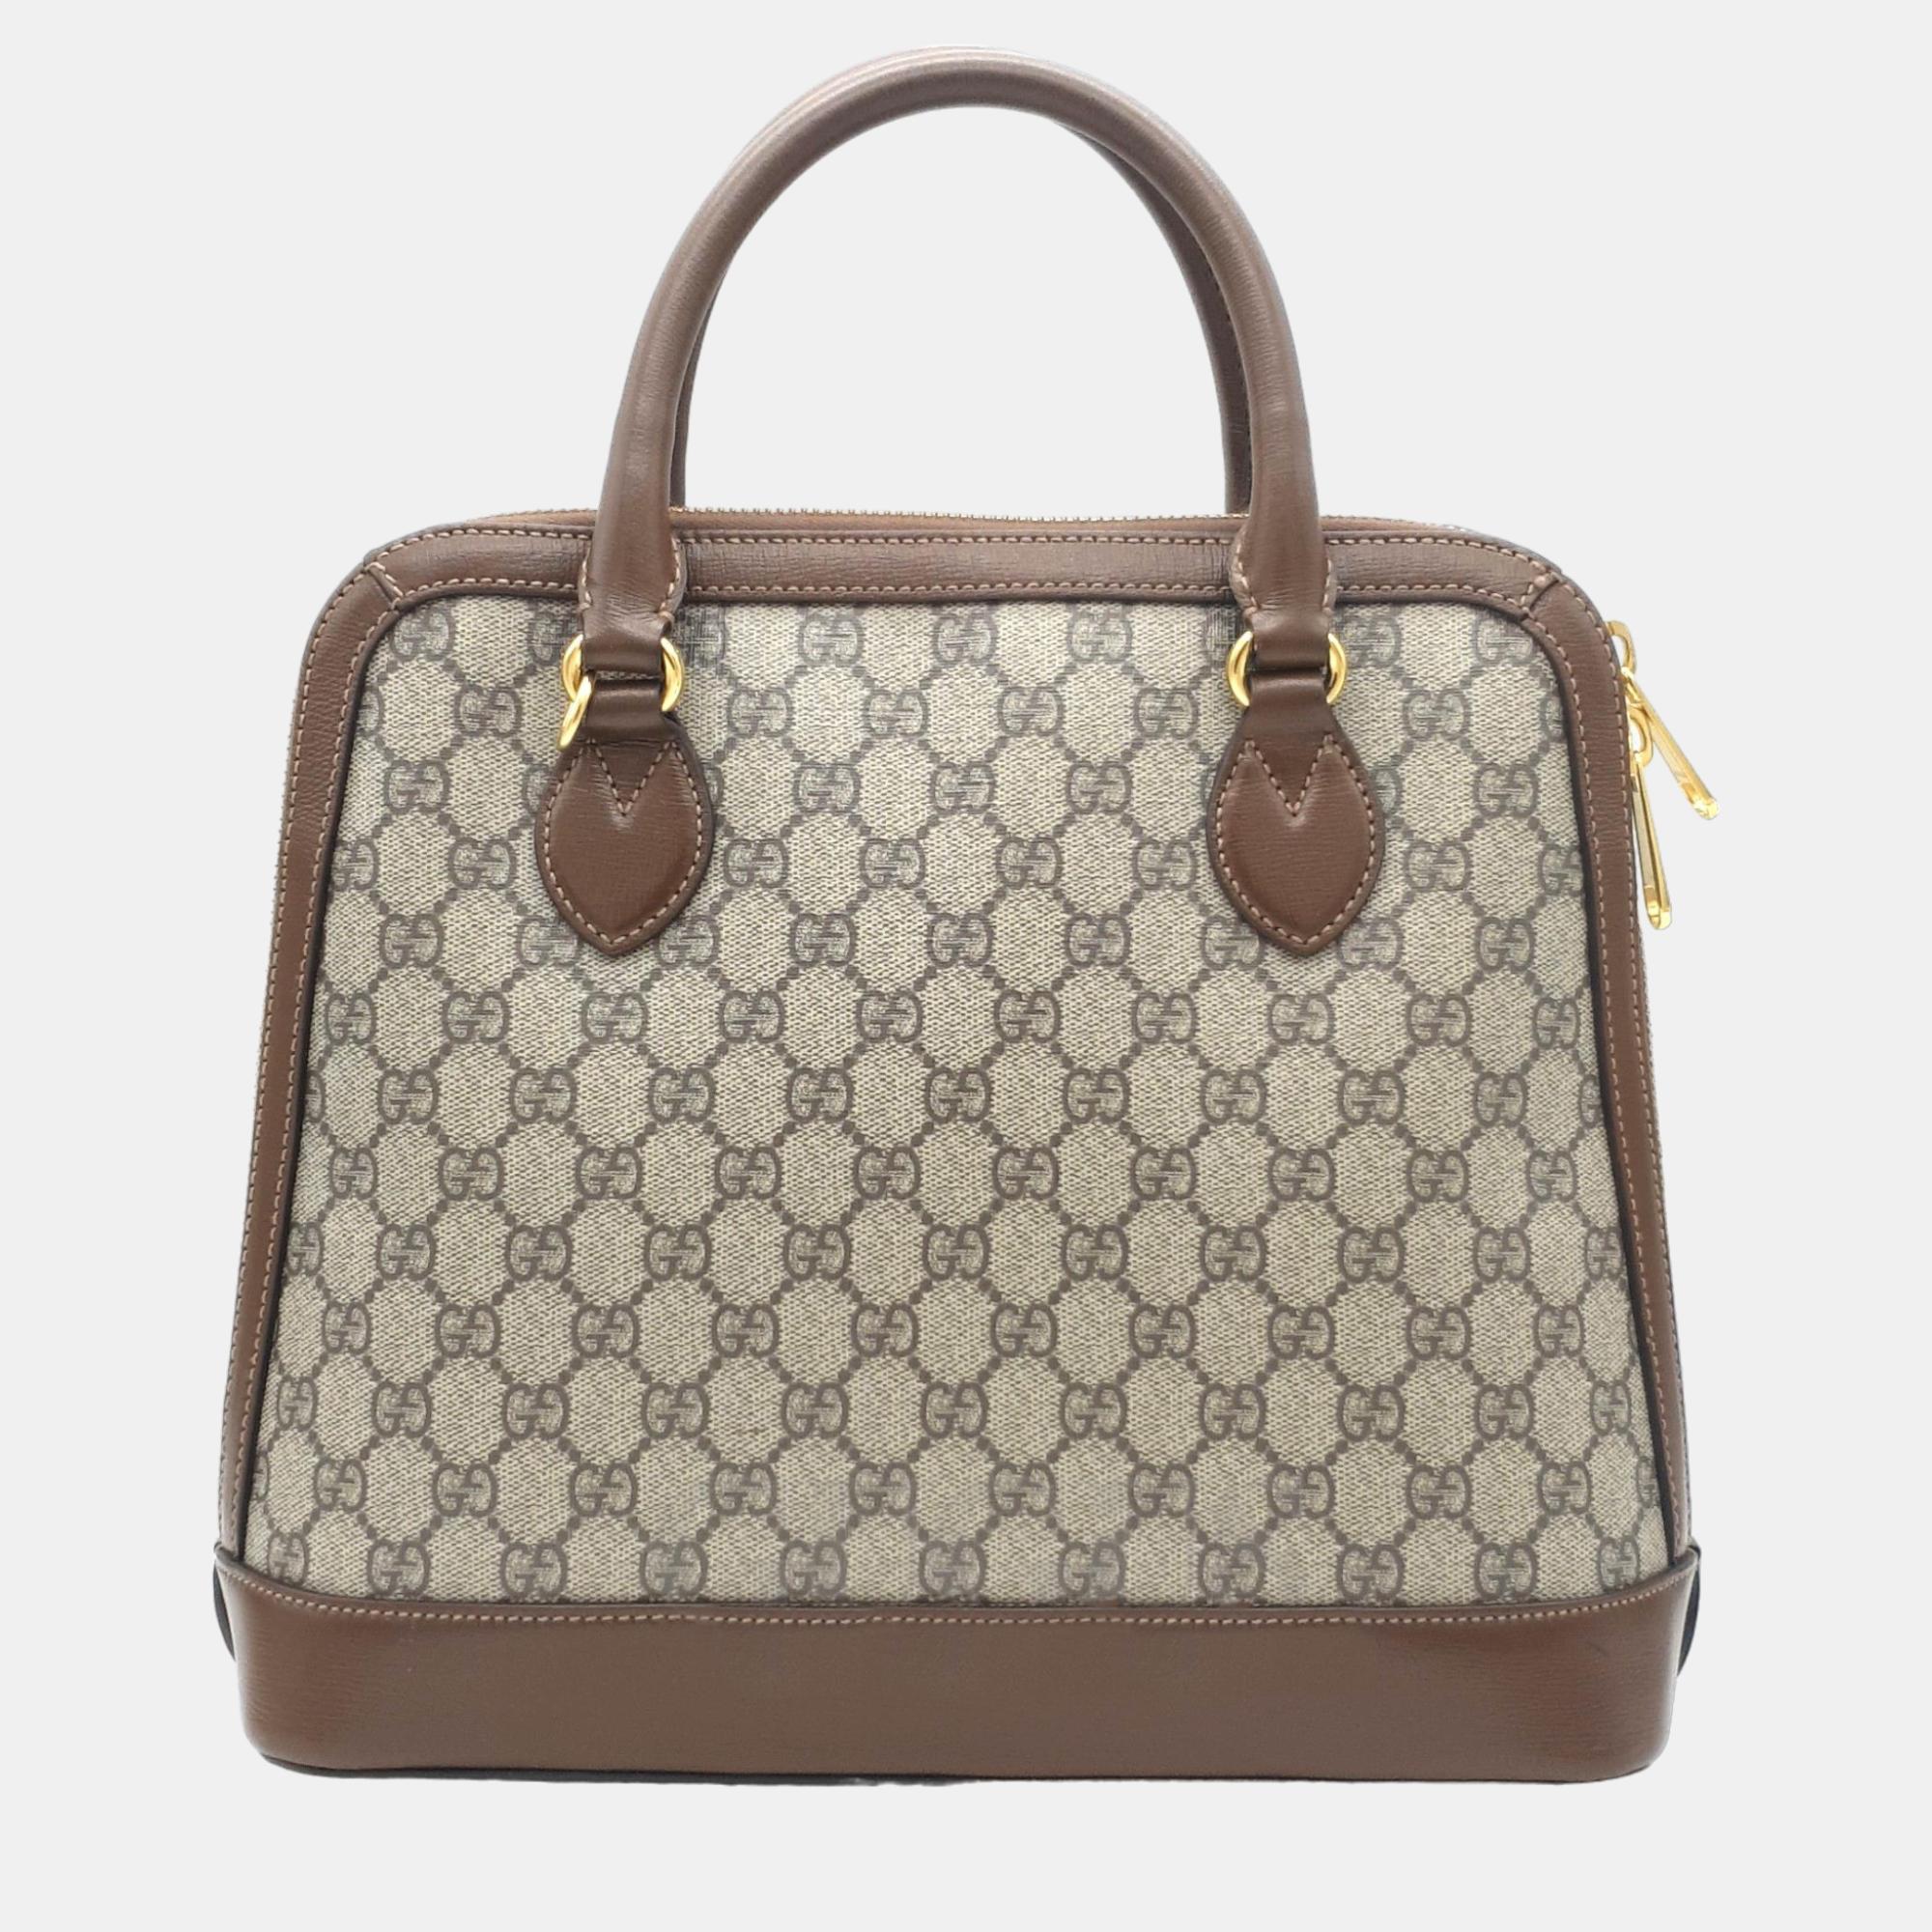 Gucci 1955 Horsebit Top Handle Bag Medium (620850)